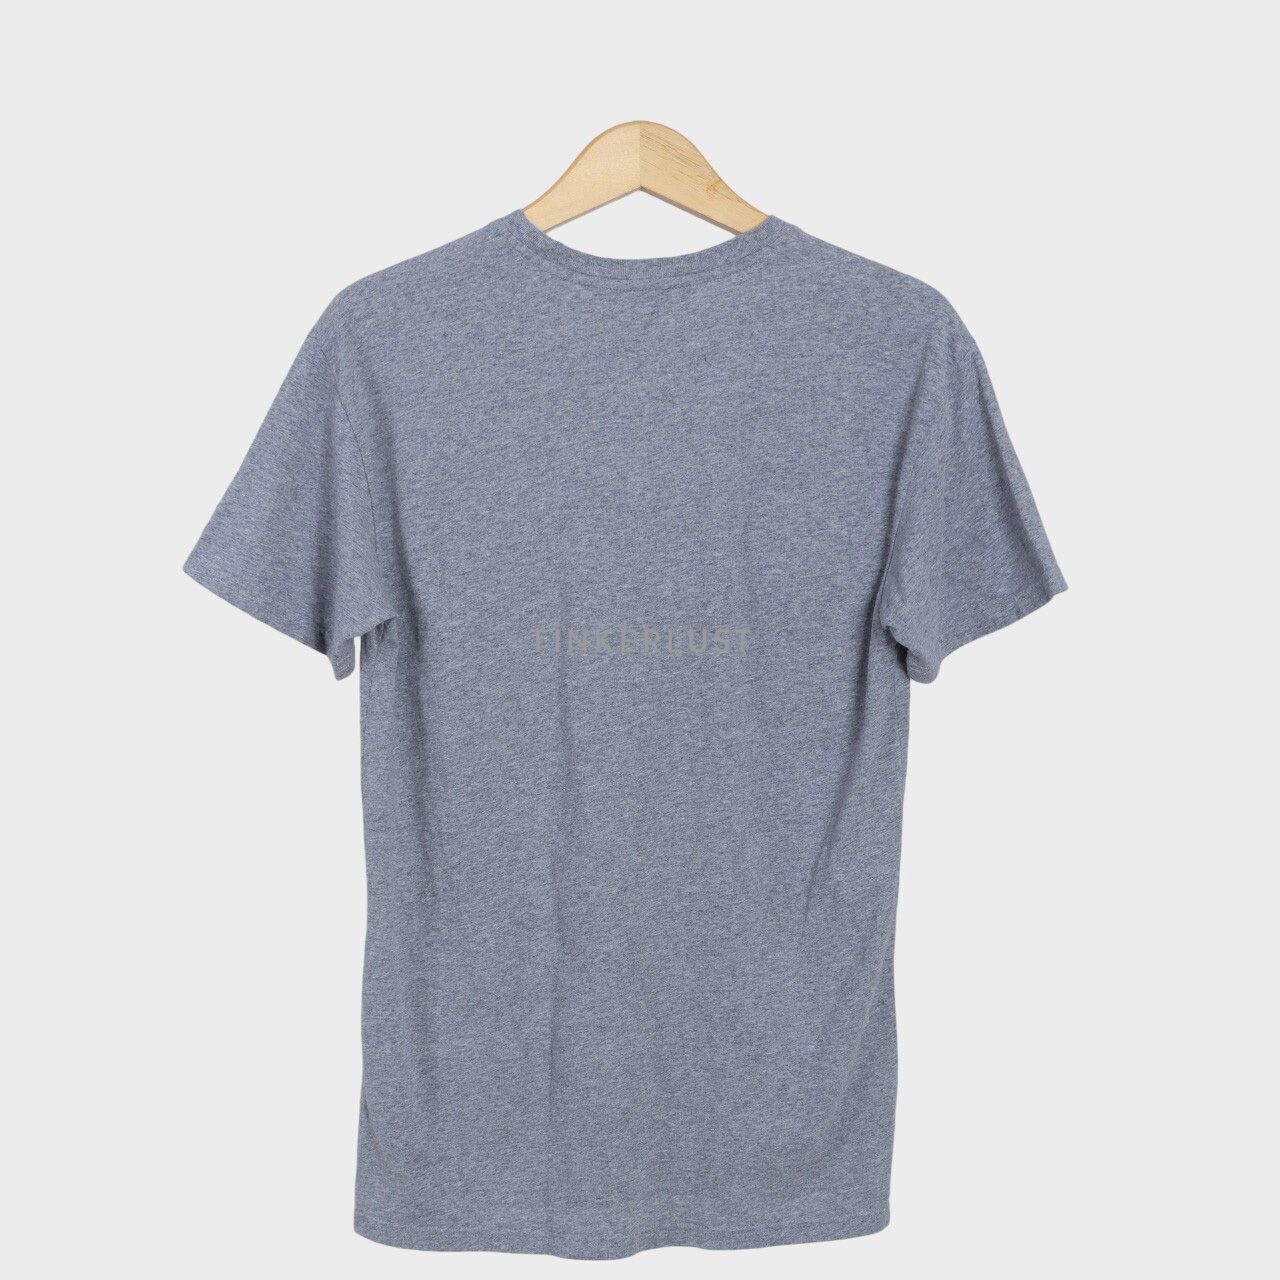 Marc Jacobs Elephant Grey Multicolour Melange T-Shirt